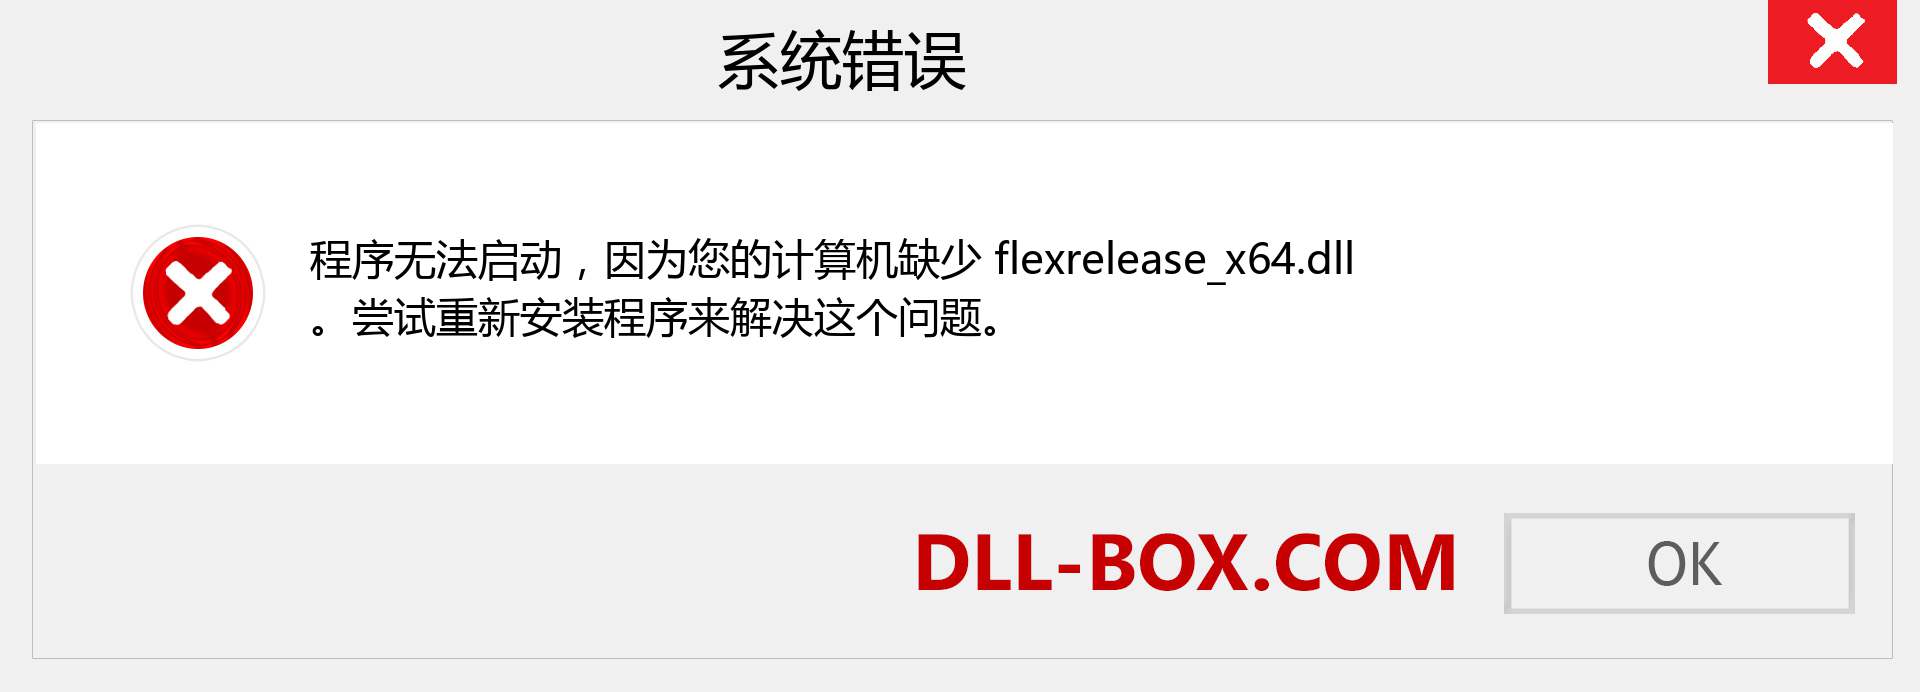 flexrelease_x64.dll 文件丢失？。 适用于 Windows 7、8、10 的下载 - 修复 Windows、照片、图像上的 flexrelease_x64 dll 丢失错误